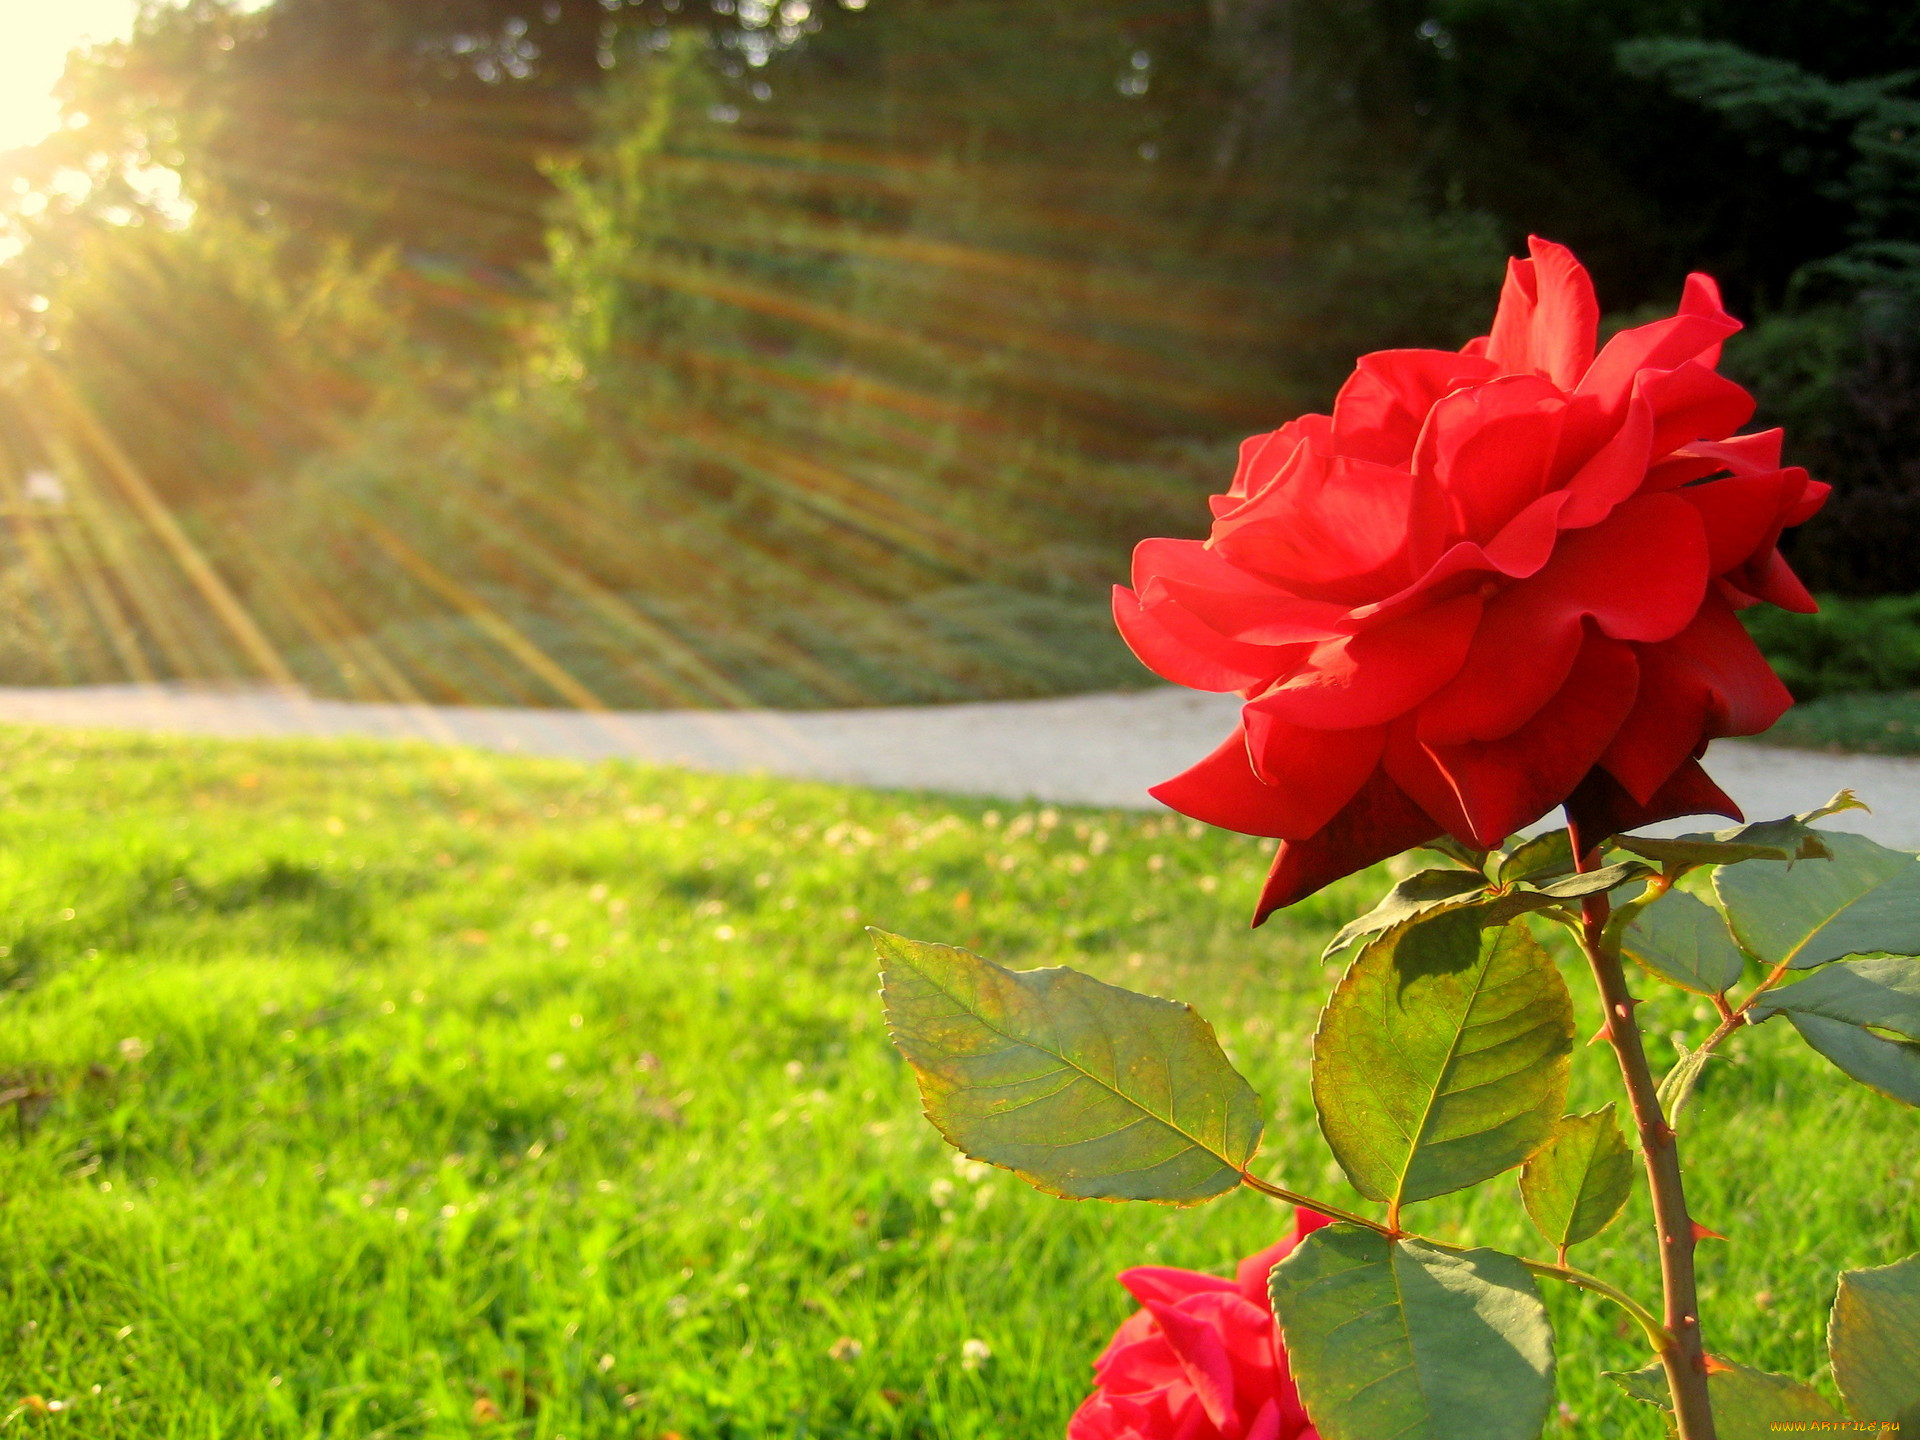 Утренняя роза в солнечных лучах